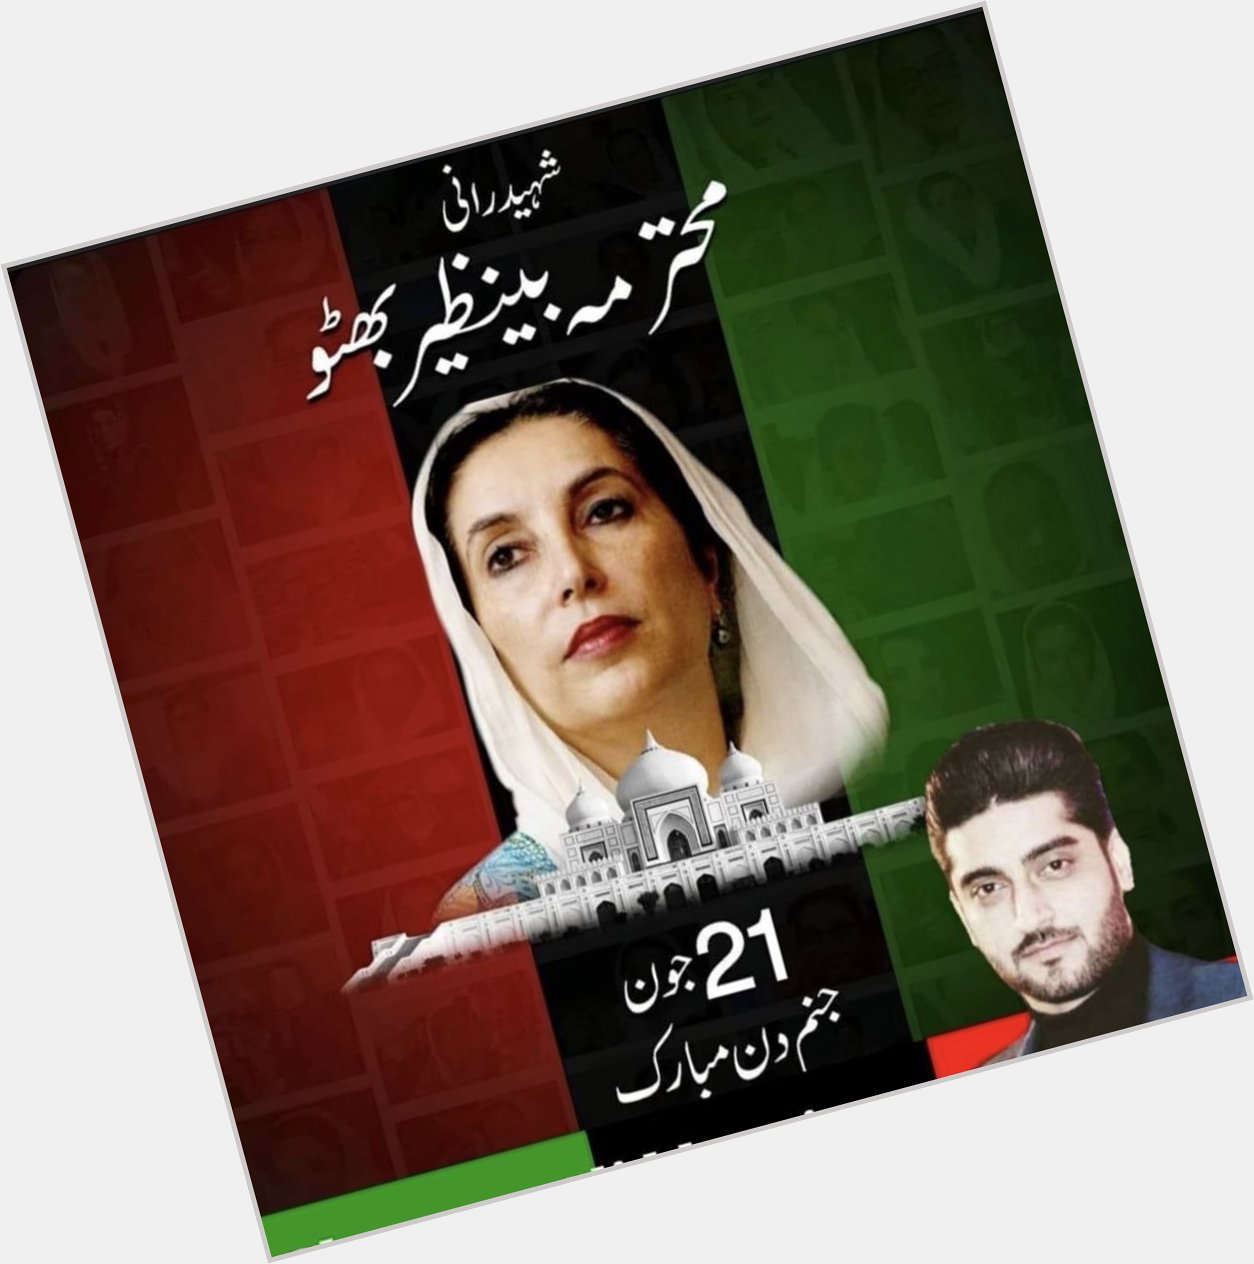 Happy Birthday Shaheed Mohtarma Benazir Bhutto  